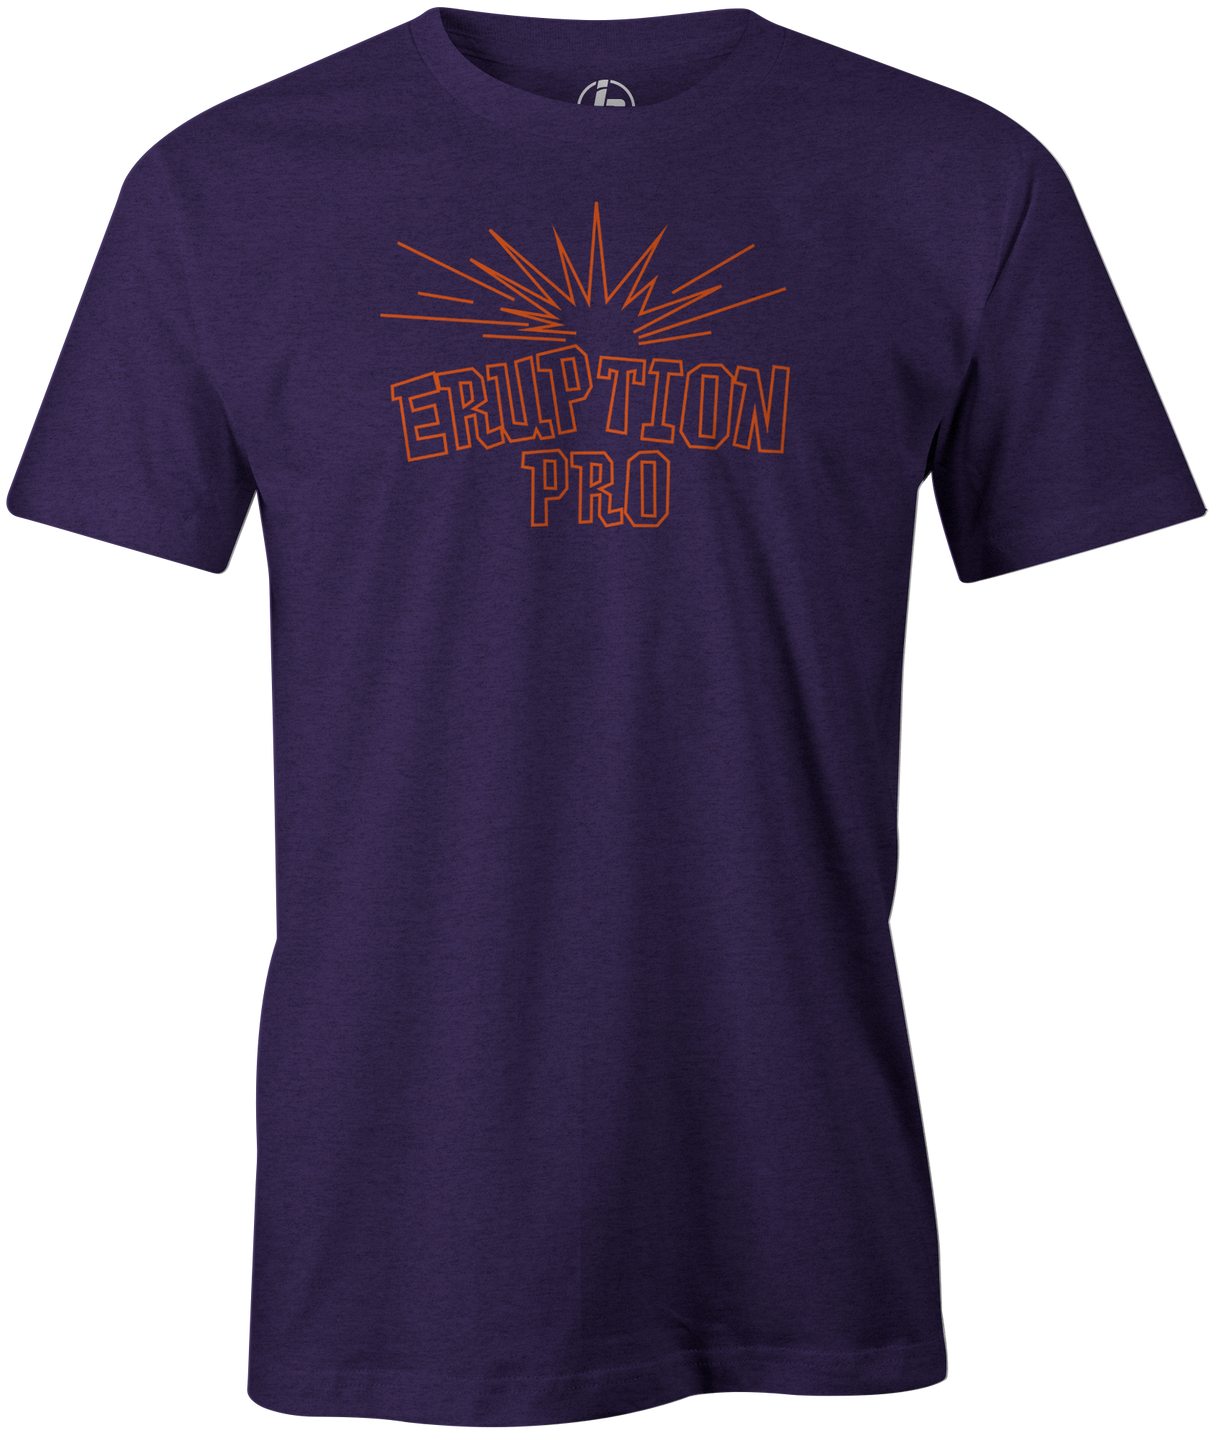 Eruption Pro Men's T-Shirt, Purple, Bowling, Columbia 300, tshirt, tee, tee-shirt, tee shirt, cool, comfortable.